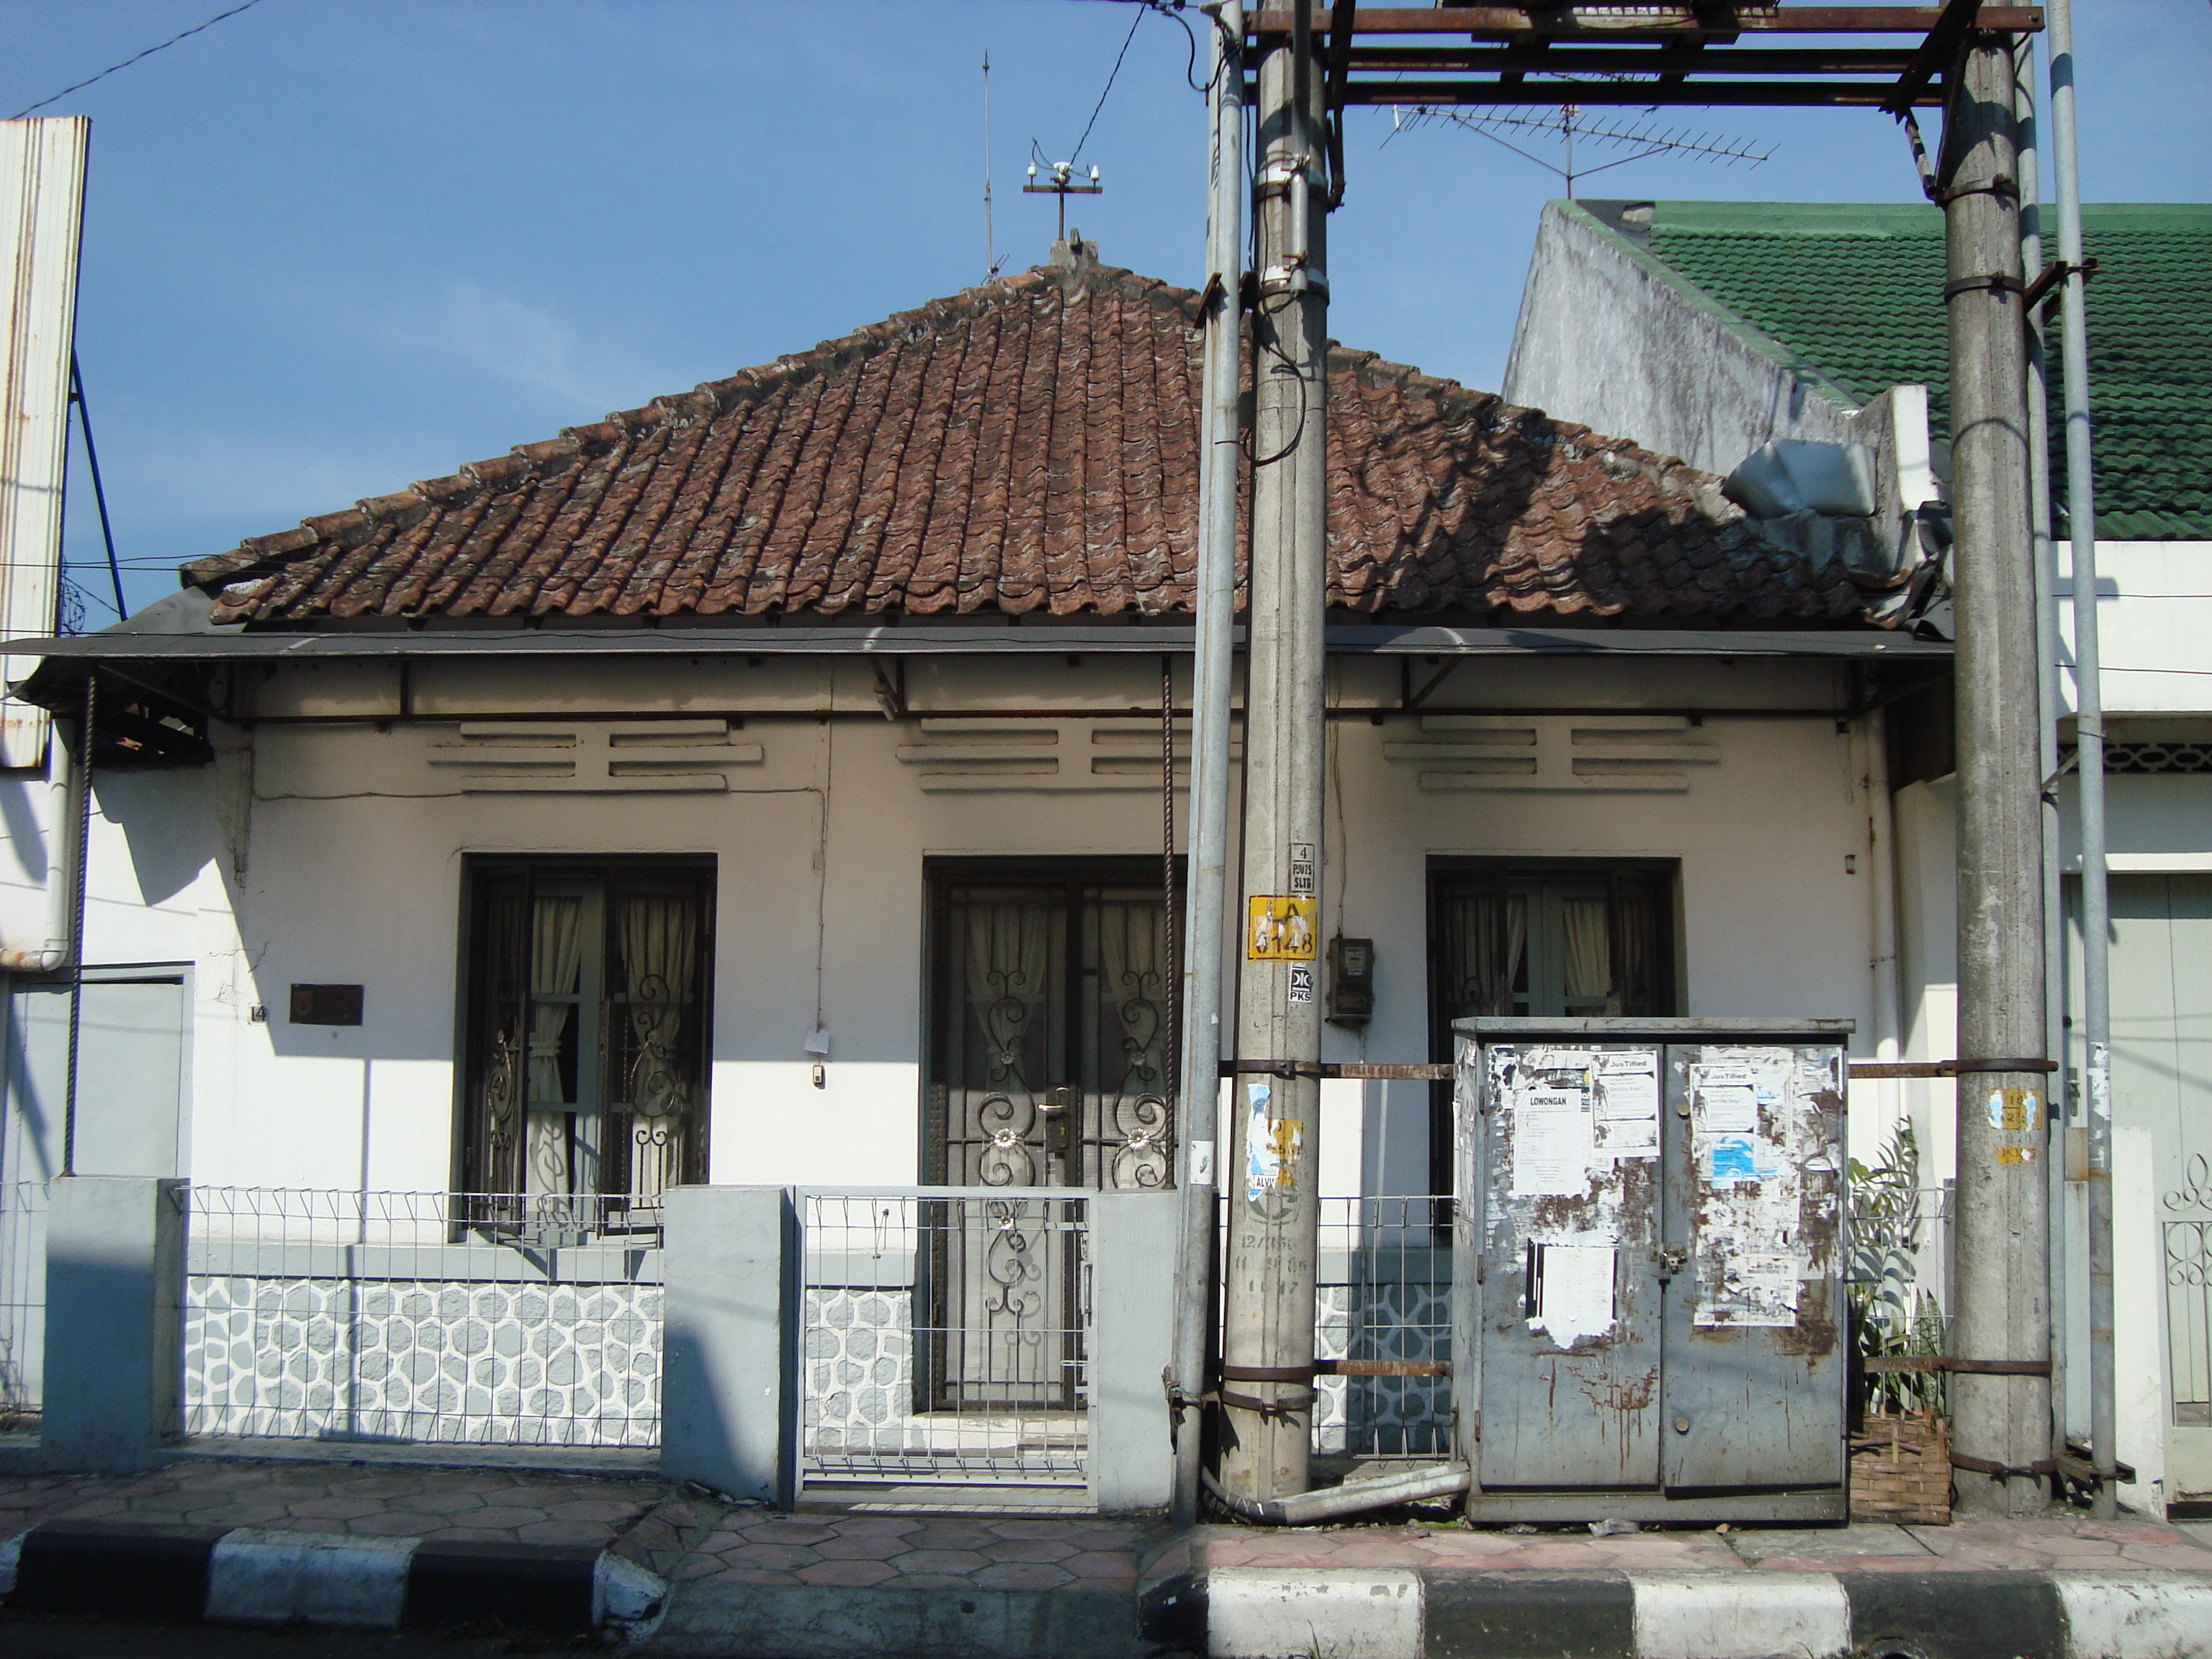 You are currently viewing Rumah Tinggal Jl. Semeru 14 Salatiga, Perpaduan Gaya Kolonial dan Cina